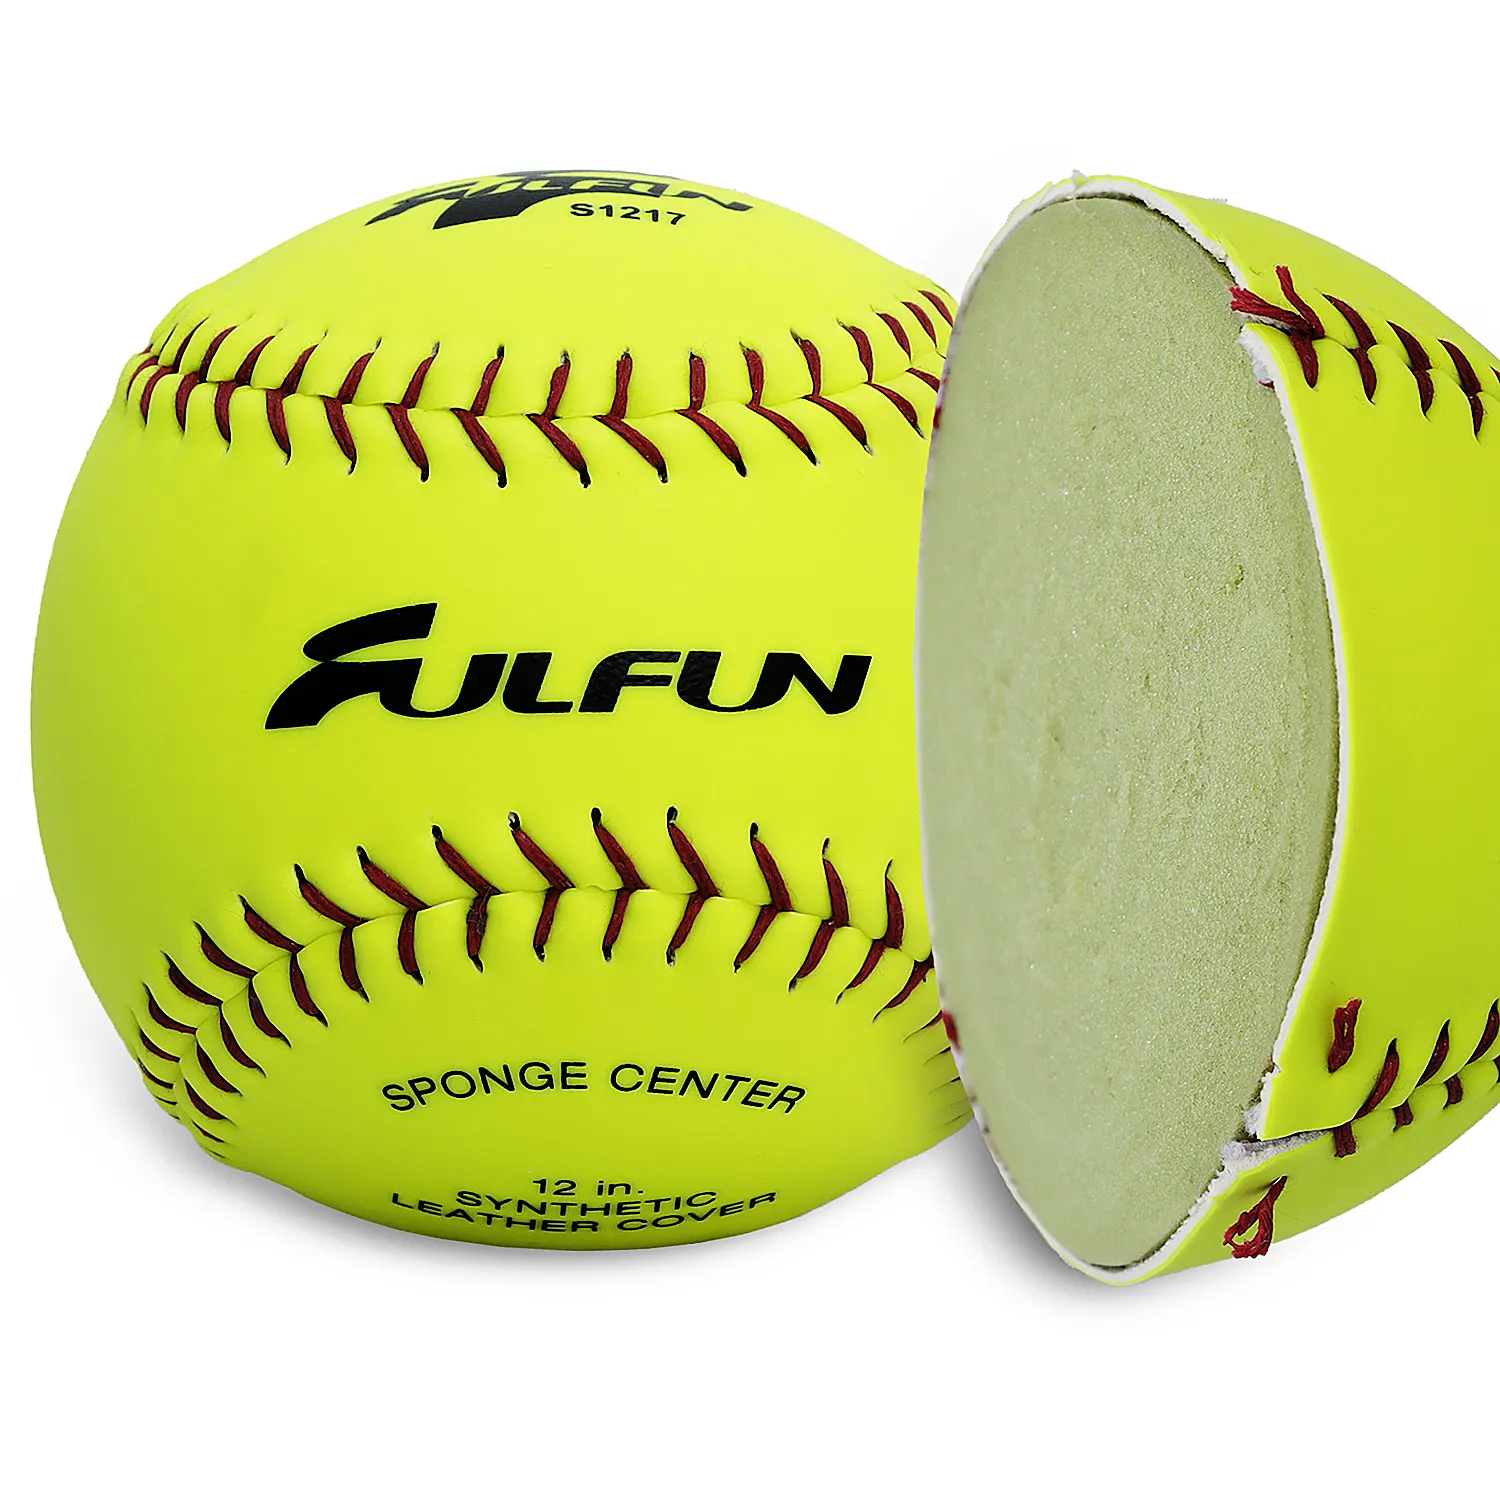 12 polegadas amarelo de cortiça de couro sintético e centro de borracha bolas de softball para prática ffs1217